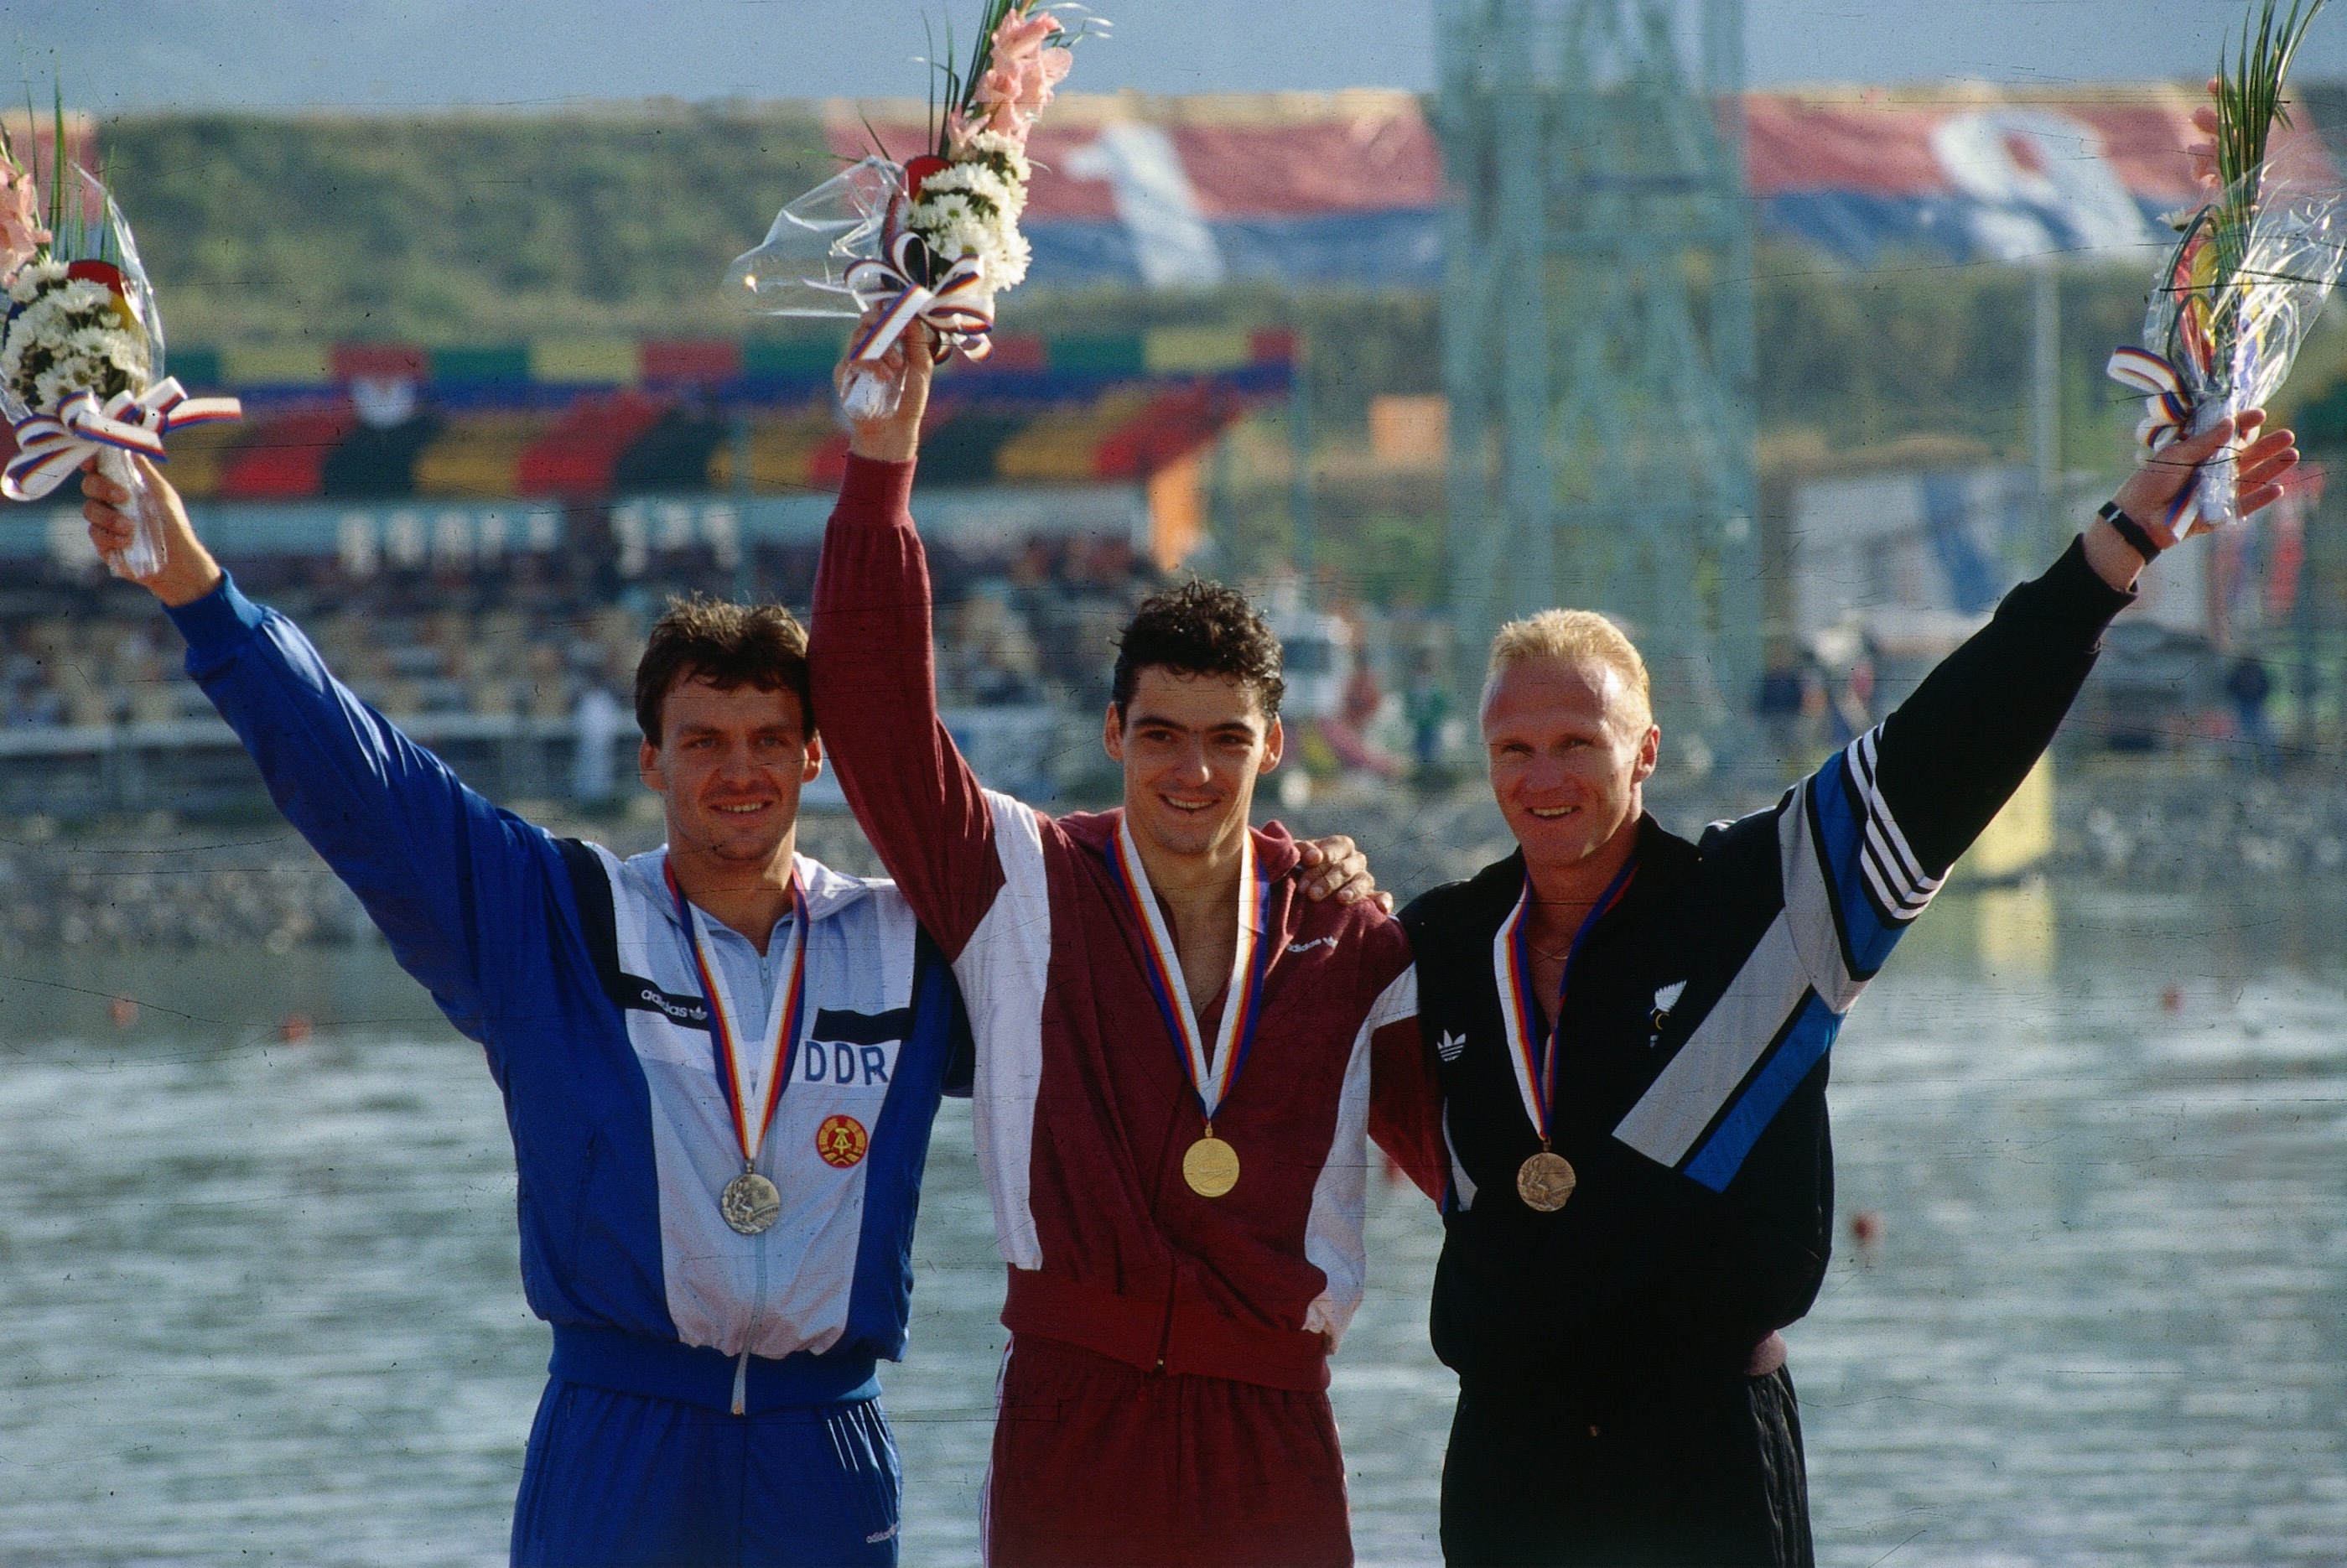 A középen álló, kiváló sportolónk 1988-ban két aranyérmet is szerzett kajakban. Hogy hívják őt?